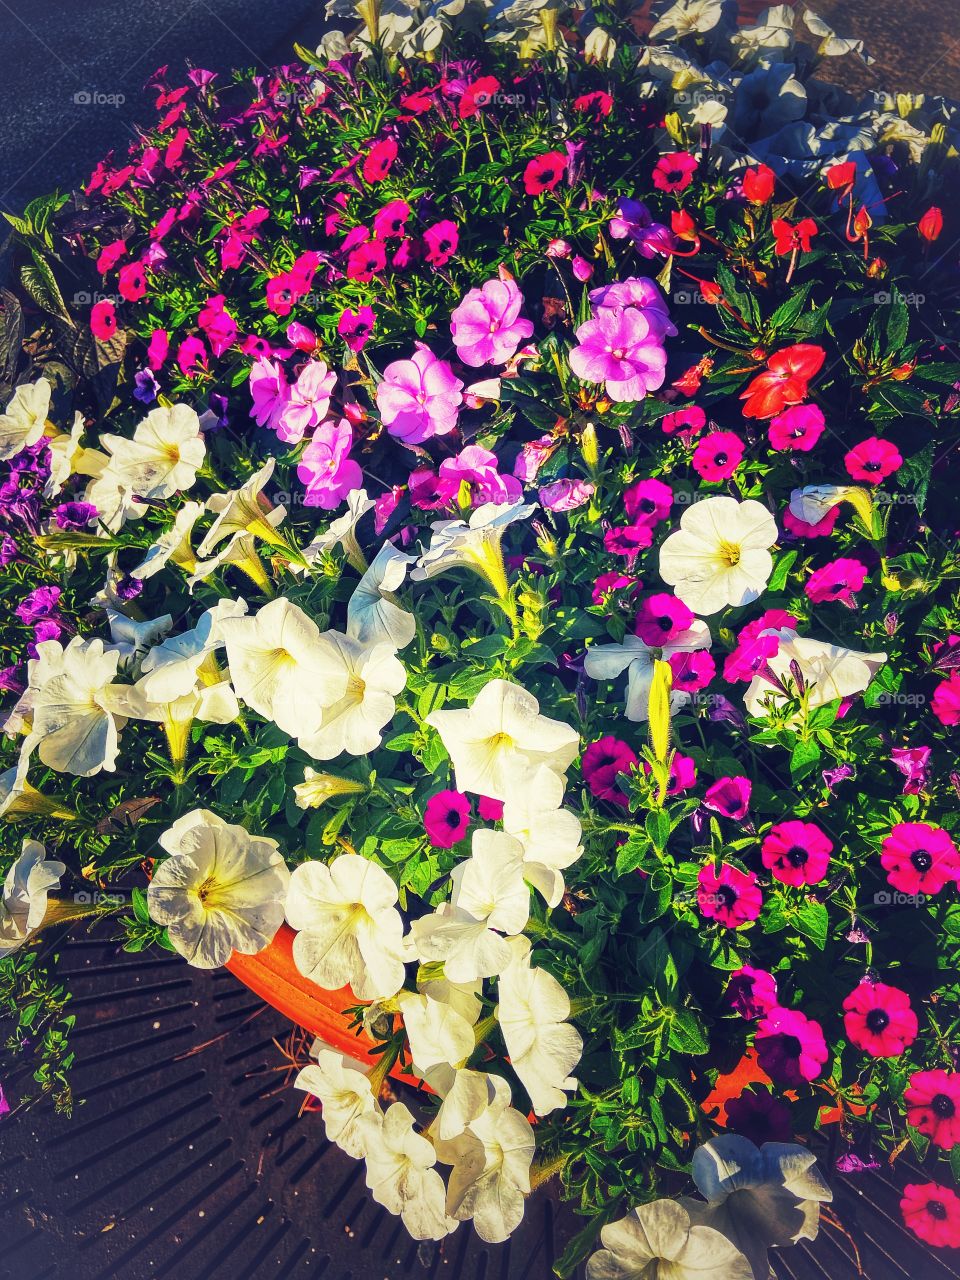 A walk in town, barrel of flowers 